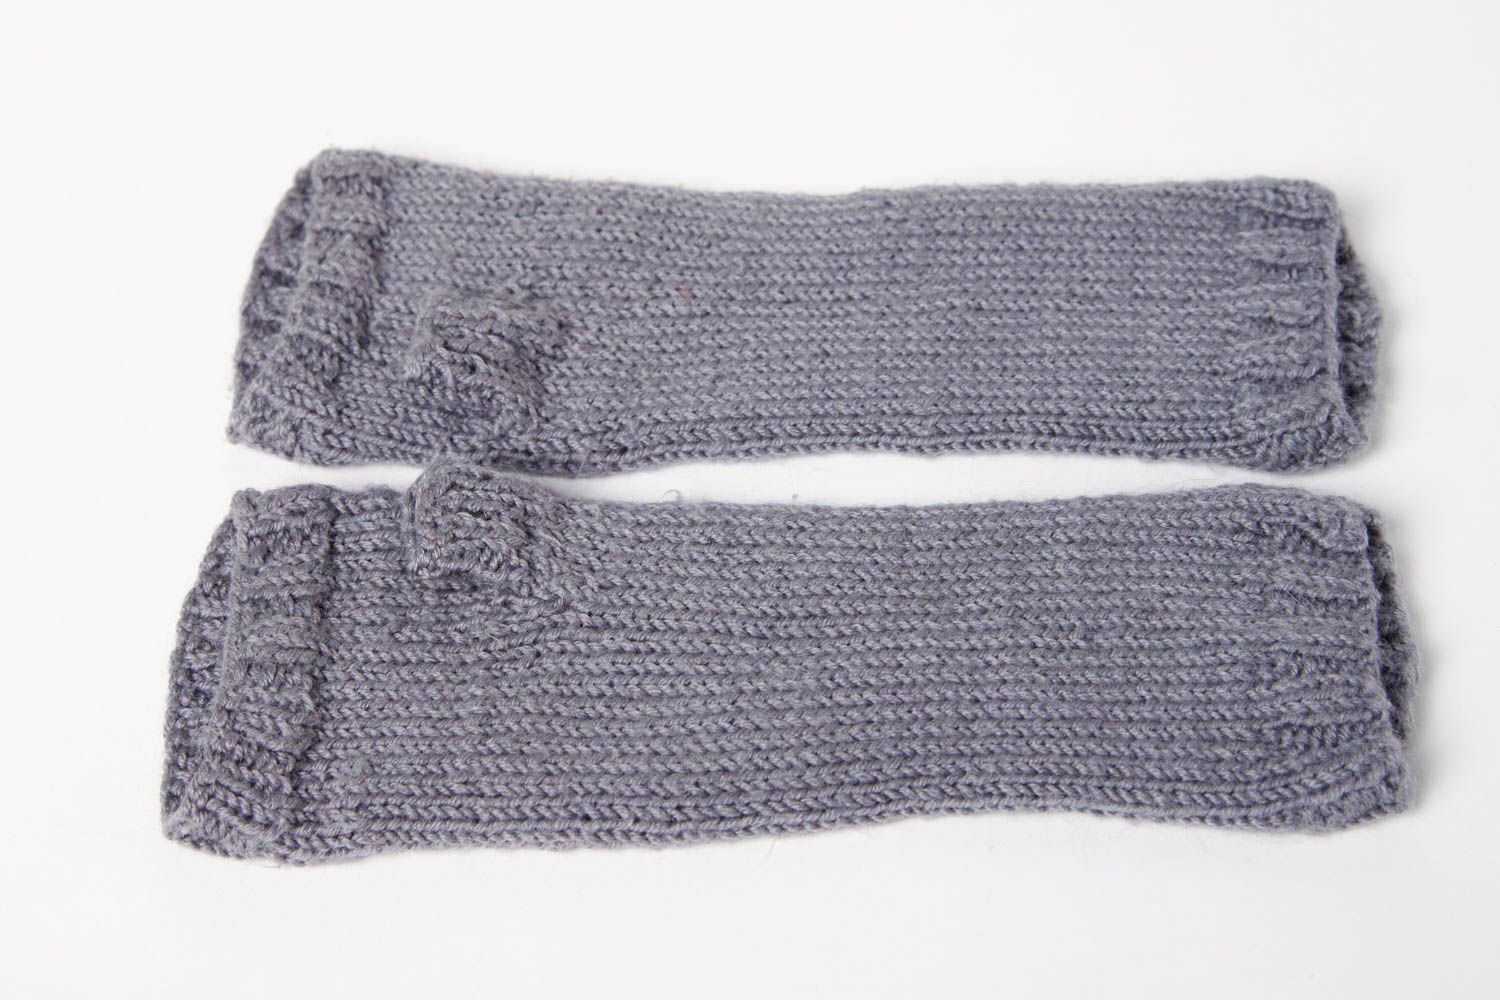 Mitones a crochet hechos a mano color gris accesorio de moda ropa femenina foto 9